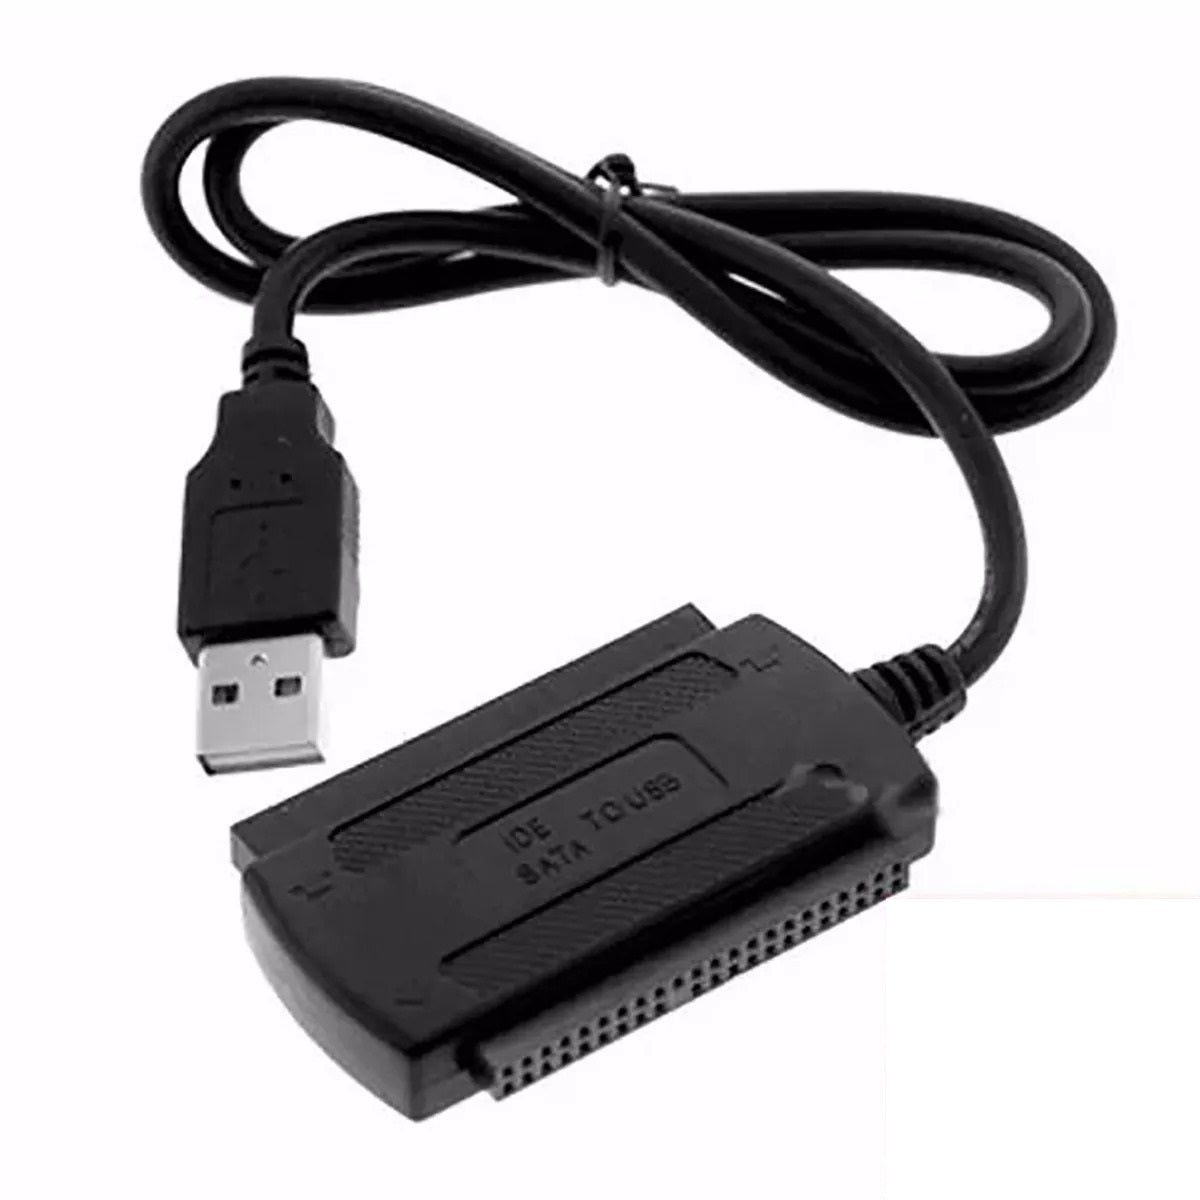 Cabo Adaptador USB 2.0 para IDE / SATA 2.5 - 3.5 HD - Multi4you®